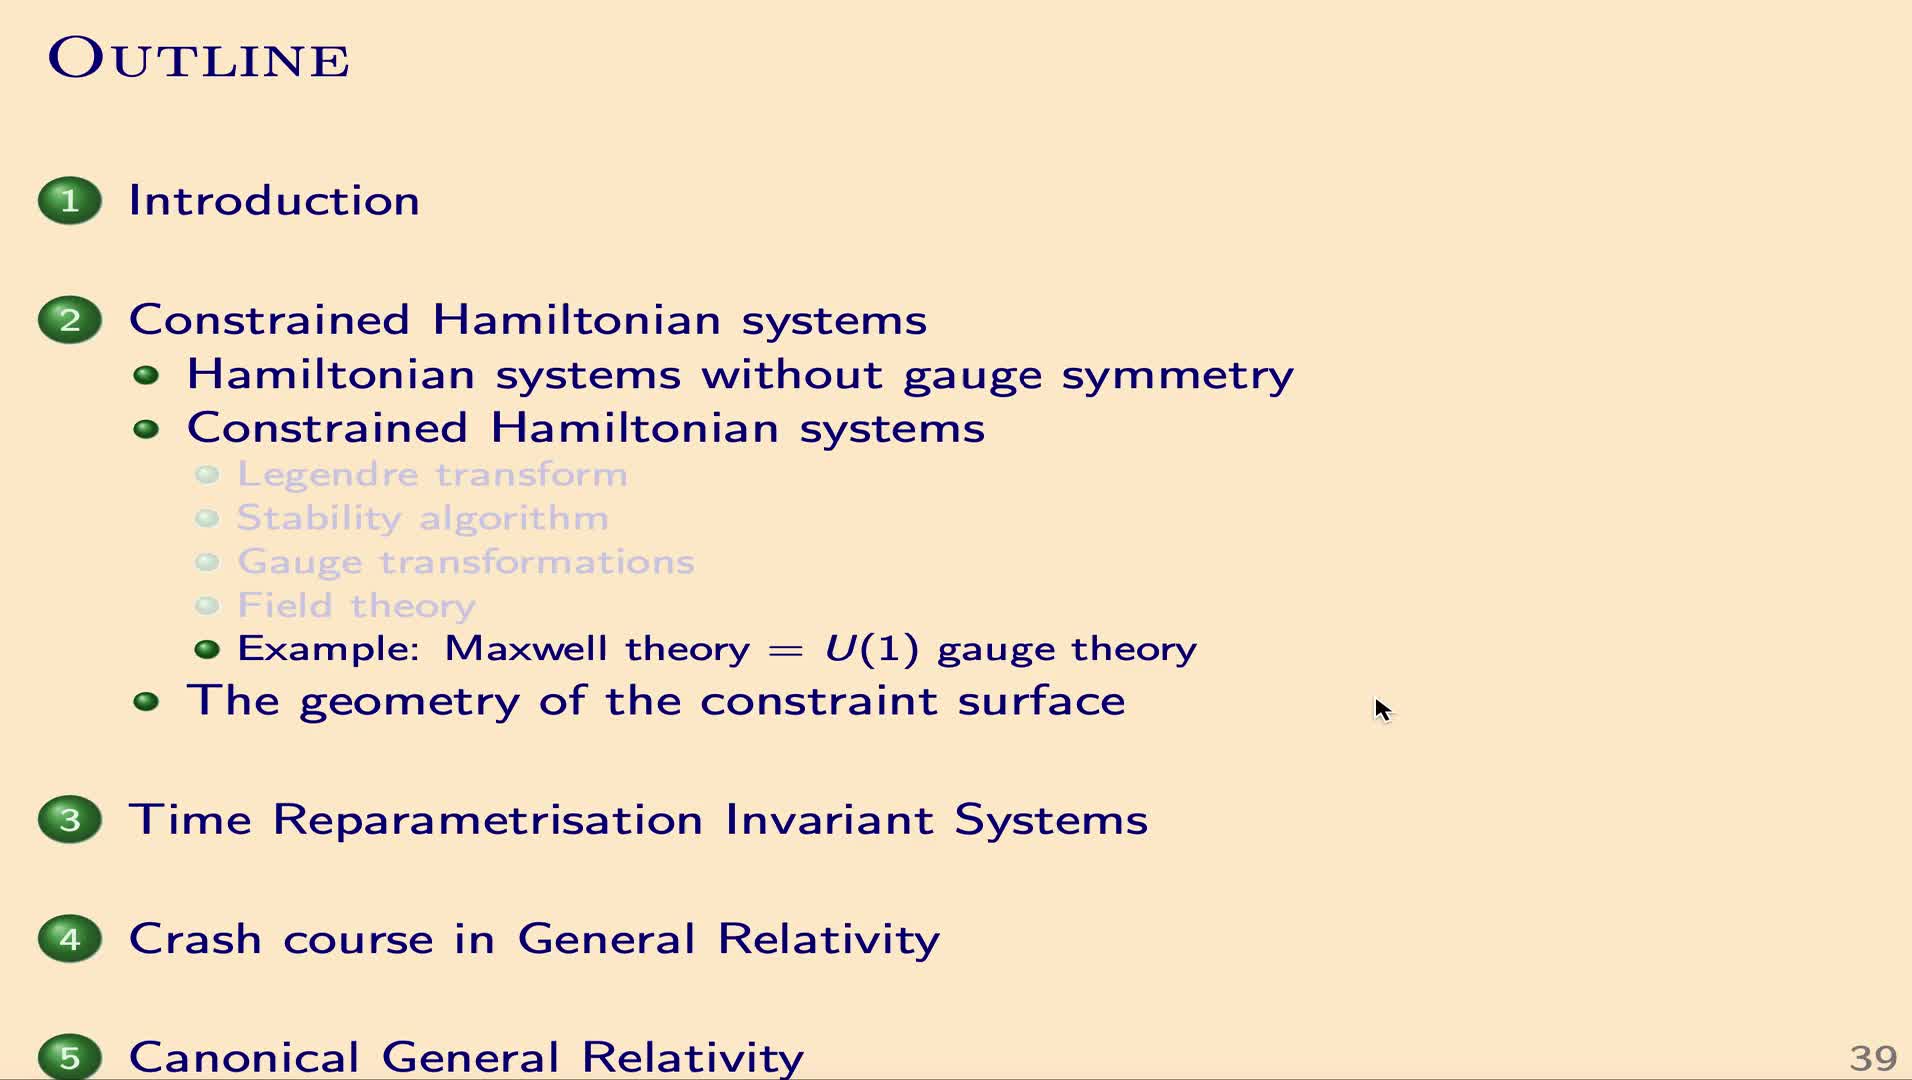 QG I: 2.2.5 - Example: Maxwell theory = U(1) gauge theory